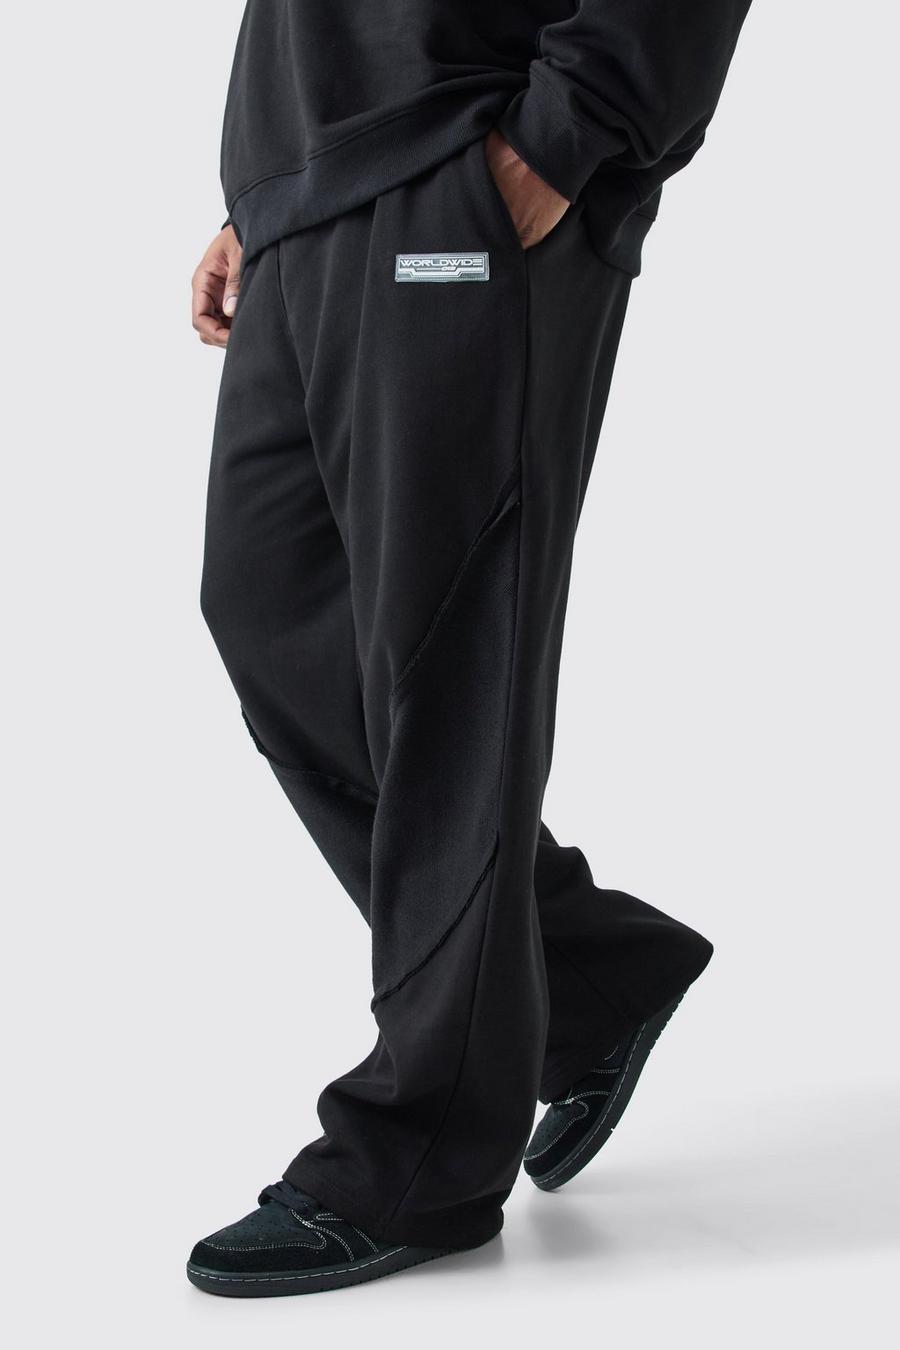 Pantalón deportivo Plus holgado con panel y bajo sin acabar, Black nero